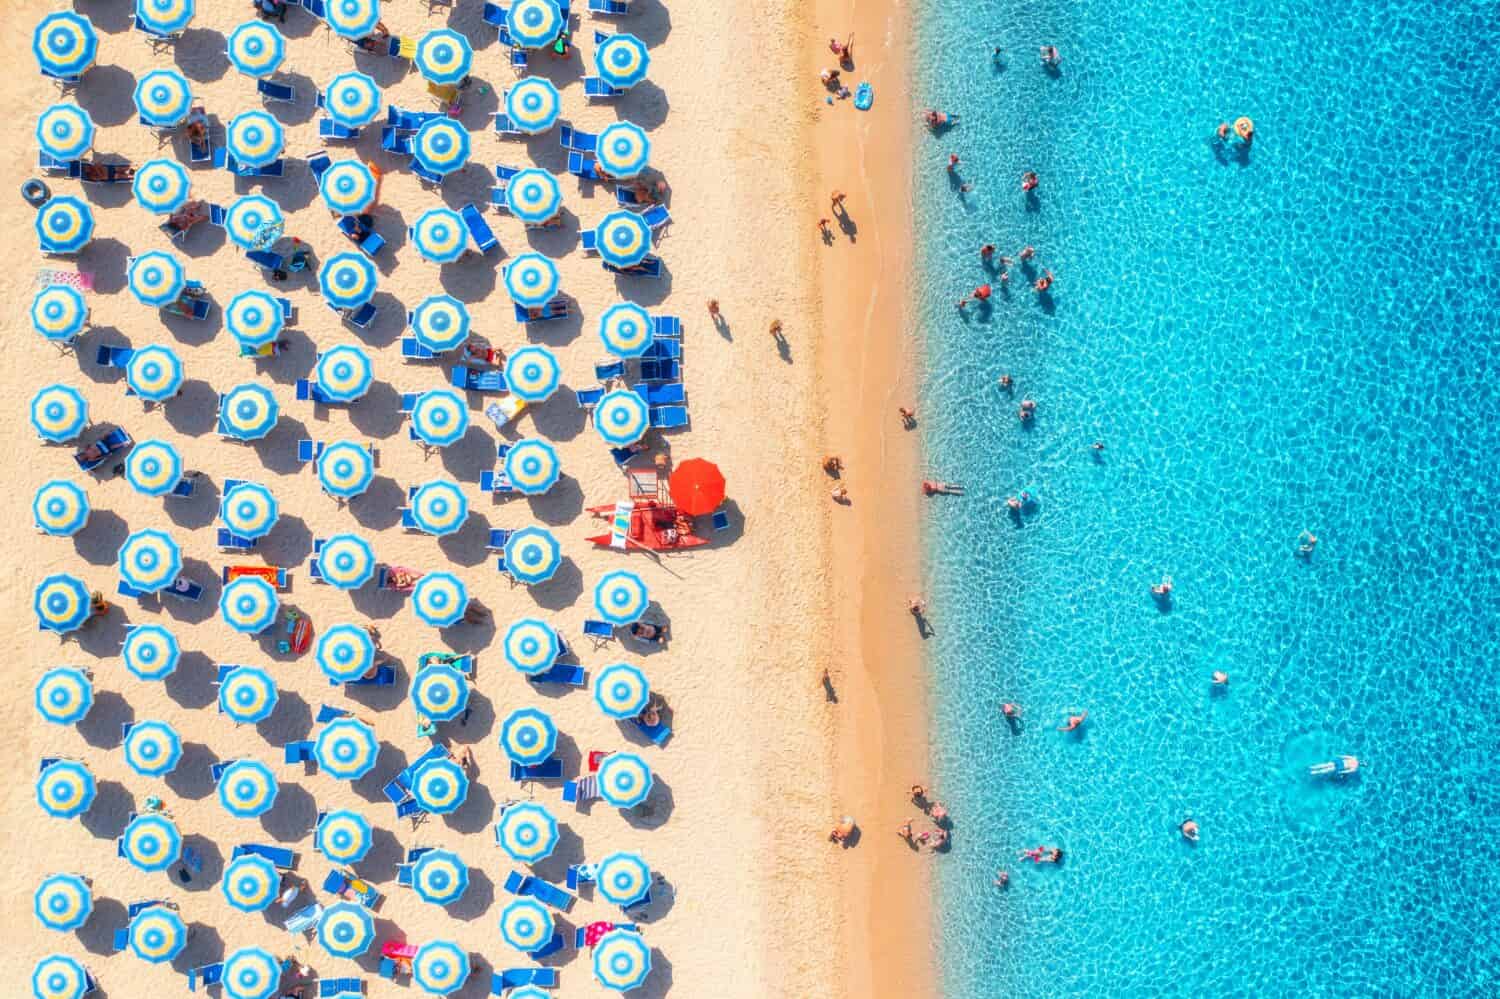 Vista aerea di ombrelloni colorati sulla spiaggia sabbiosa, persone che nuotano nel mare blu durante la giornata di sole estiva.  Resort in Sardegna, Italia.  Vista sul mare tropicale con acqua turchese.  Viaggi e vacanze.  Vista dall'alto